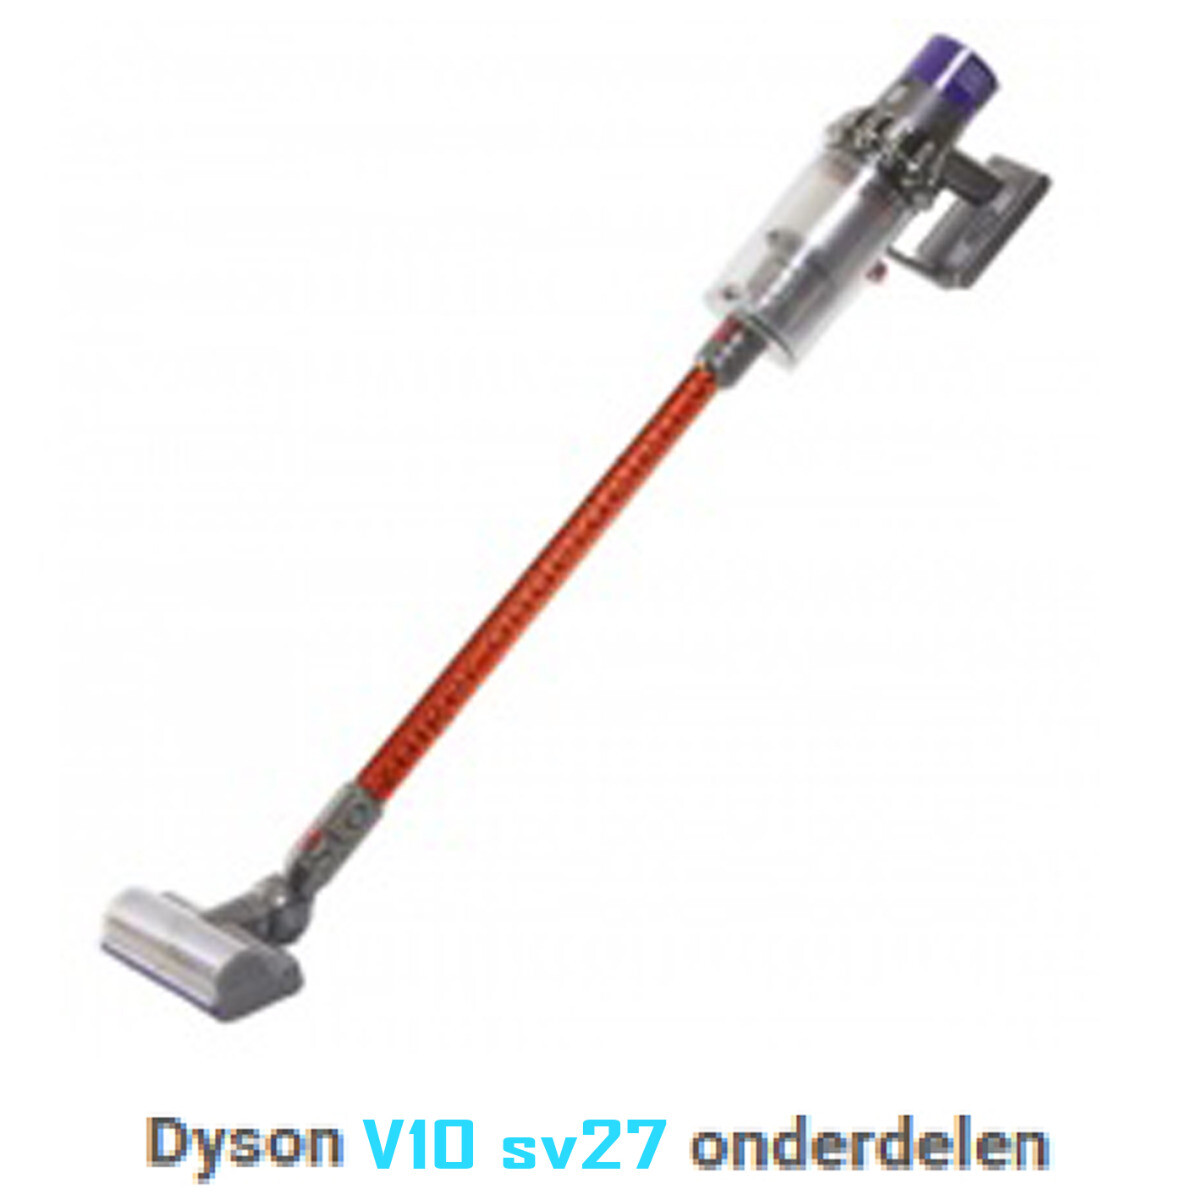 Dyson V10 sv27 onderdelen